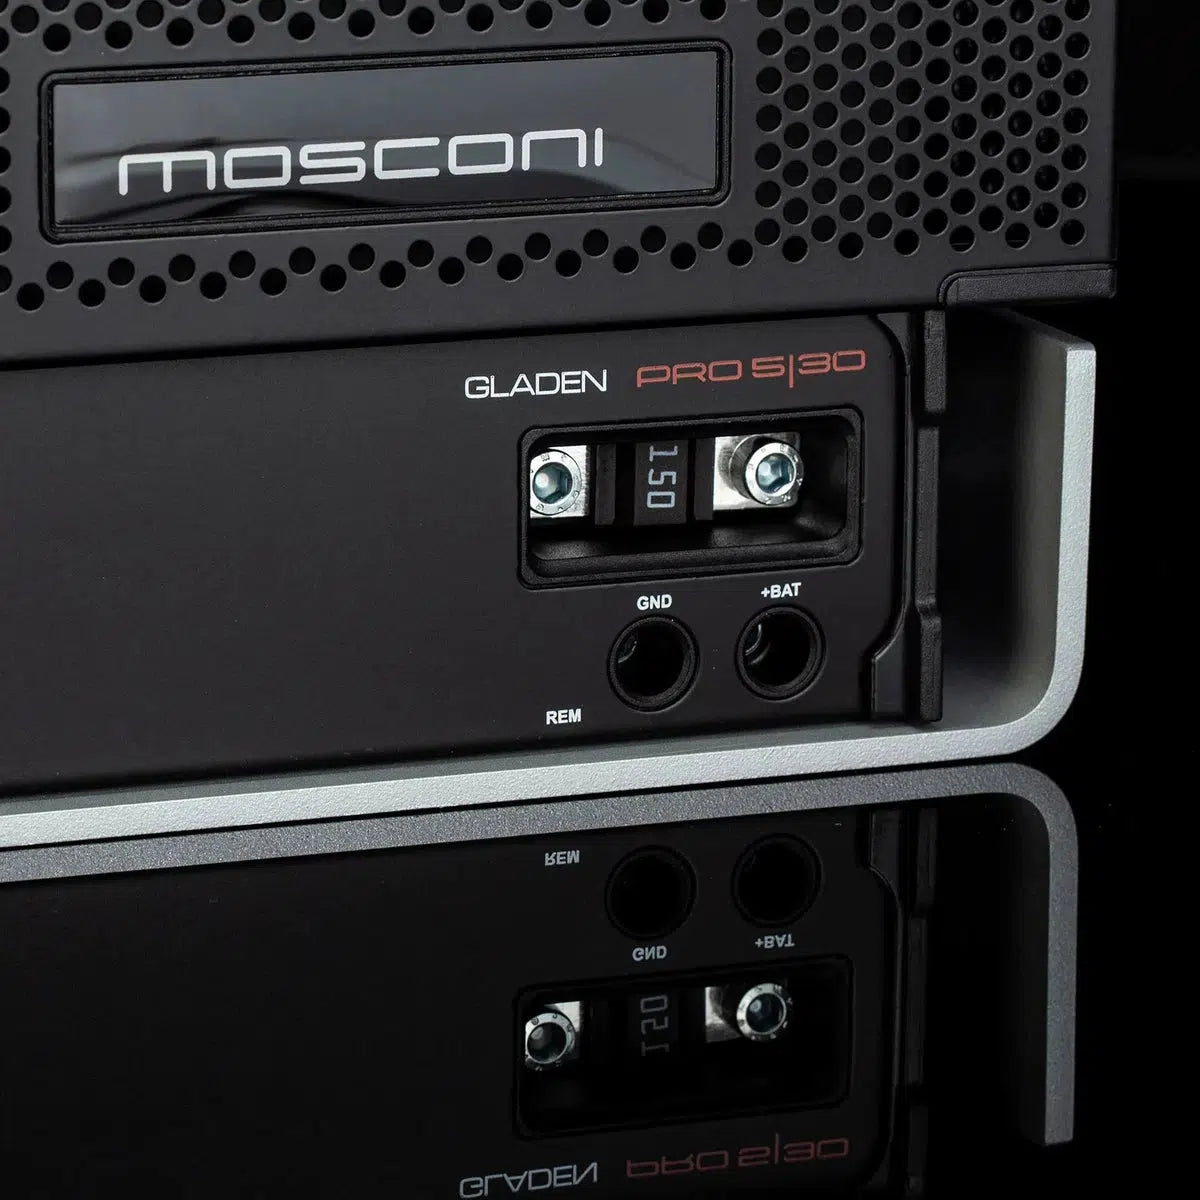 Gladen-Mosconi PRO 5|30-5-channel amplifier-Masori.de